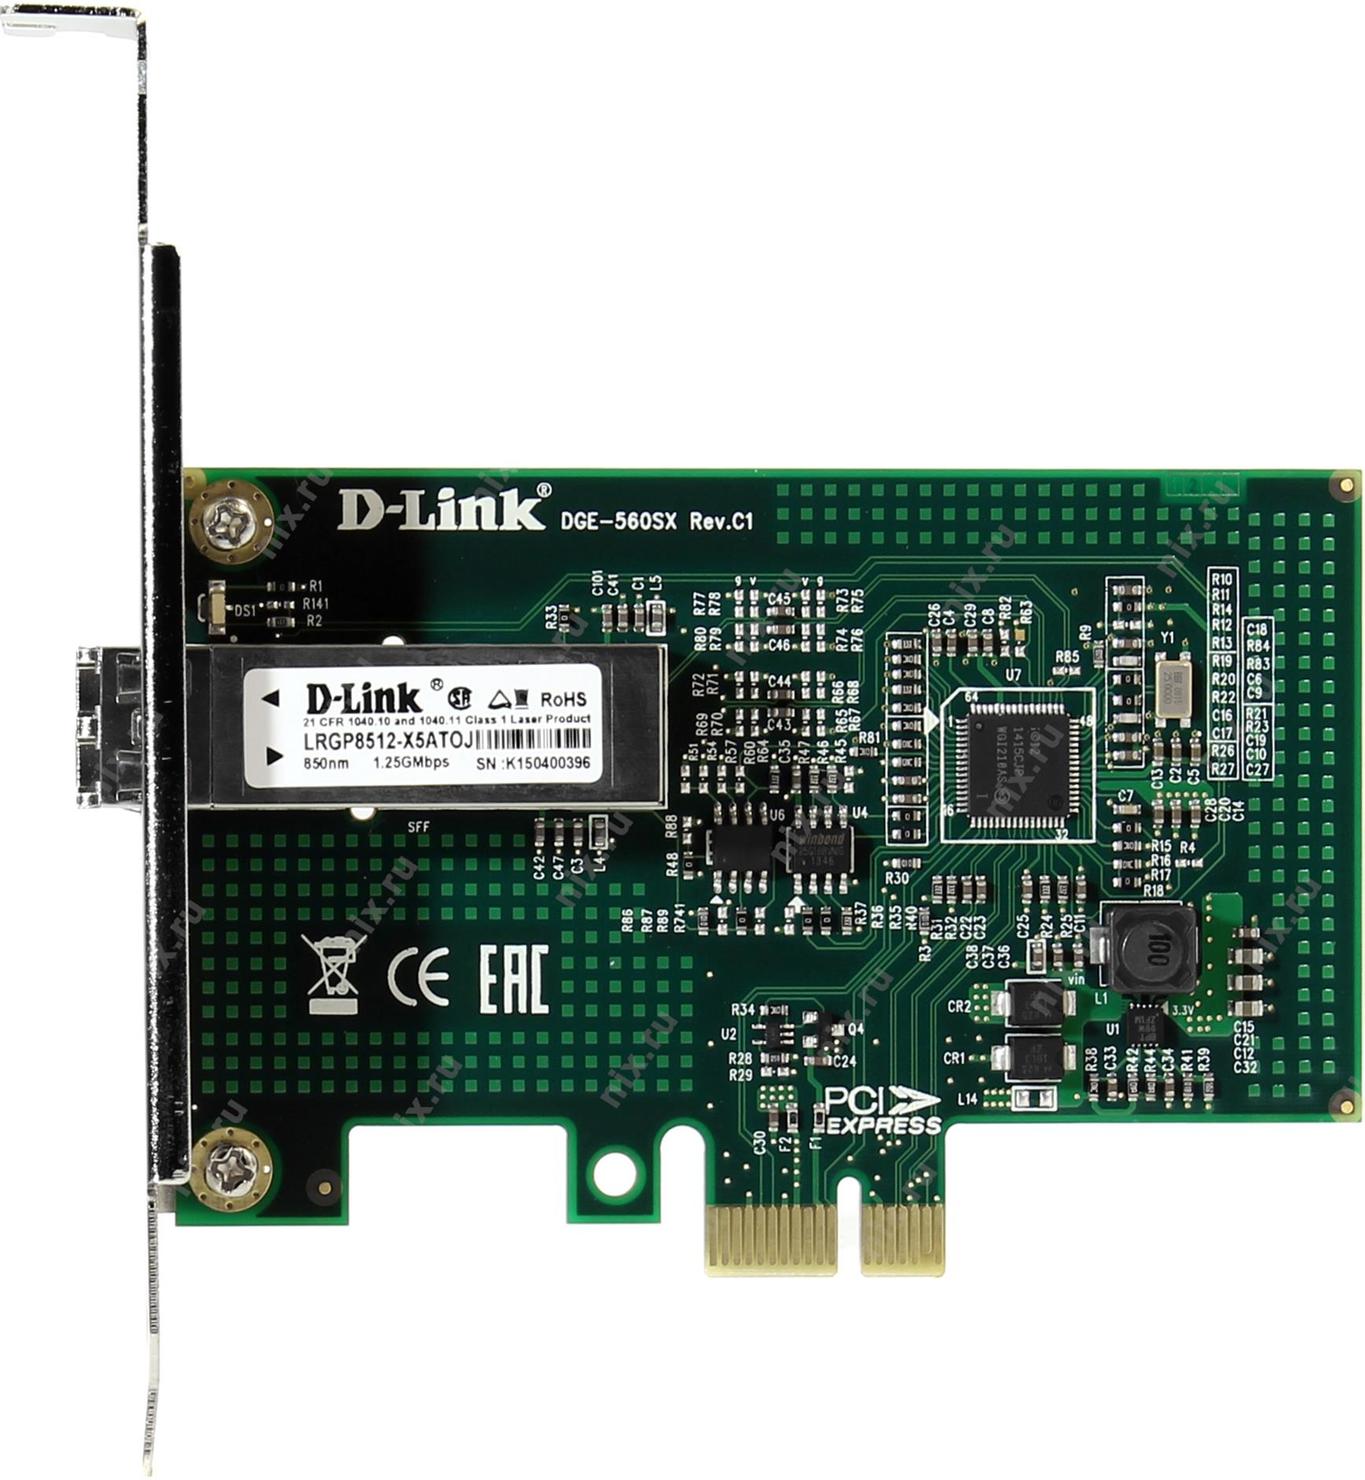 D link dge 560t. Сетевая карта d-link DGE-560sx/d1a. DGE-560sx/d1a. Сетевой адаптер Gigabit Ethernet d-link DGE-560sx/d1a PCI Express x1. Адаптер сетевой APM D-link DGE-560sx.